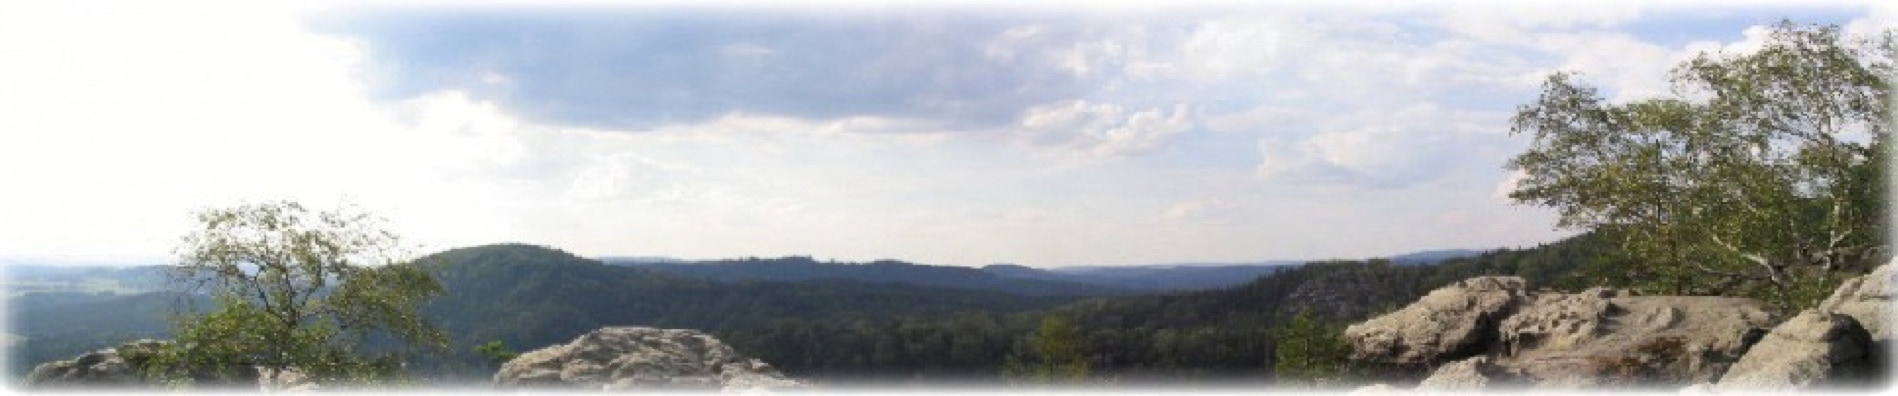 Taikiken Ritsuzen panorama view Czech Rep.